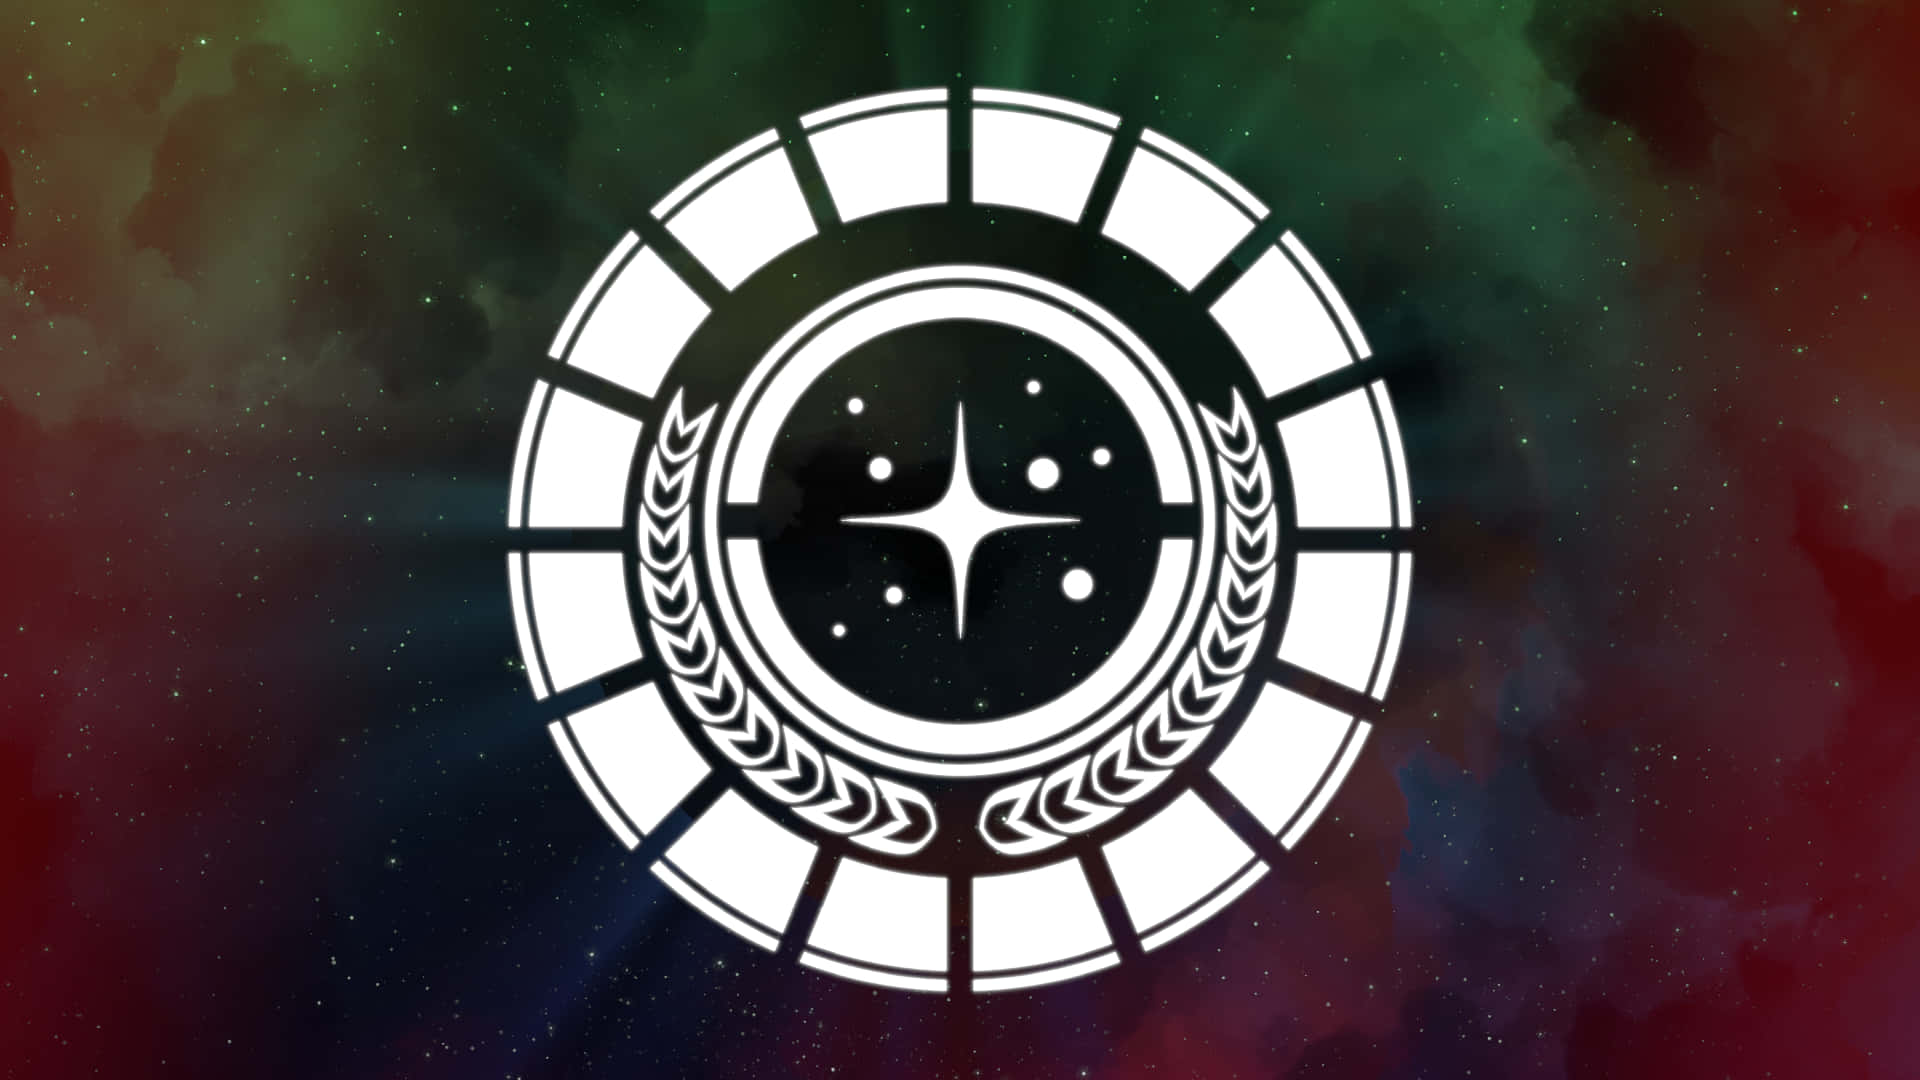 Dasimperiums-logo Aus Der Star Wars-filmreihe Wallpaper